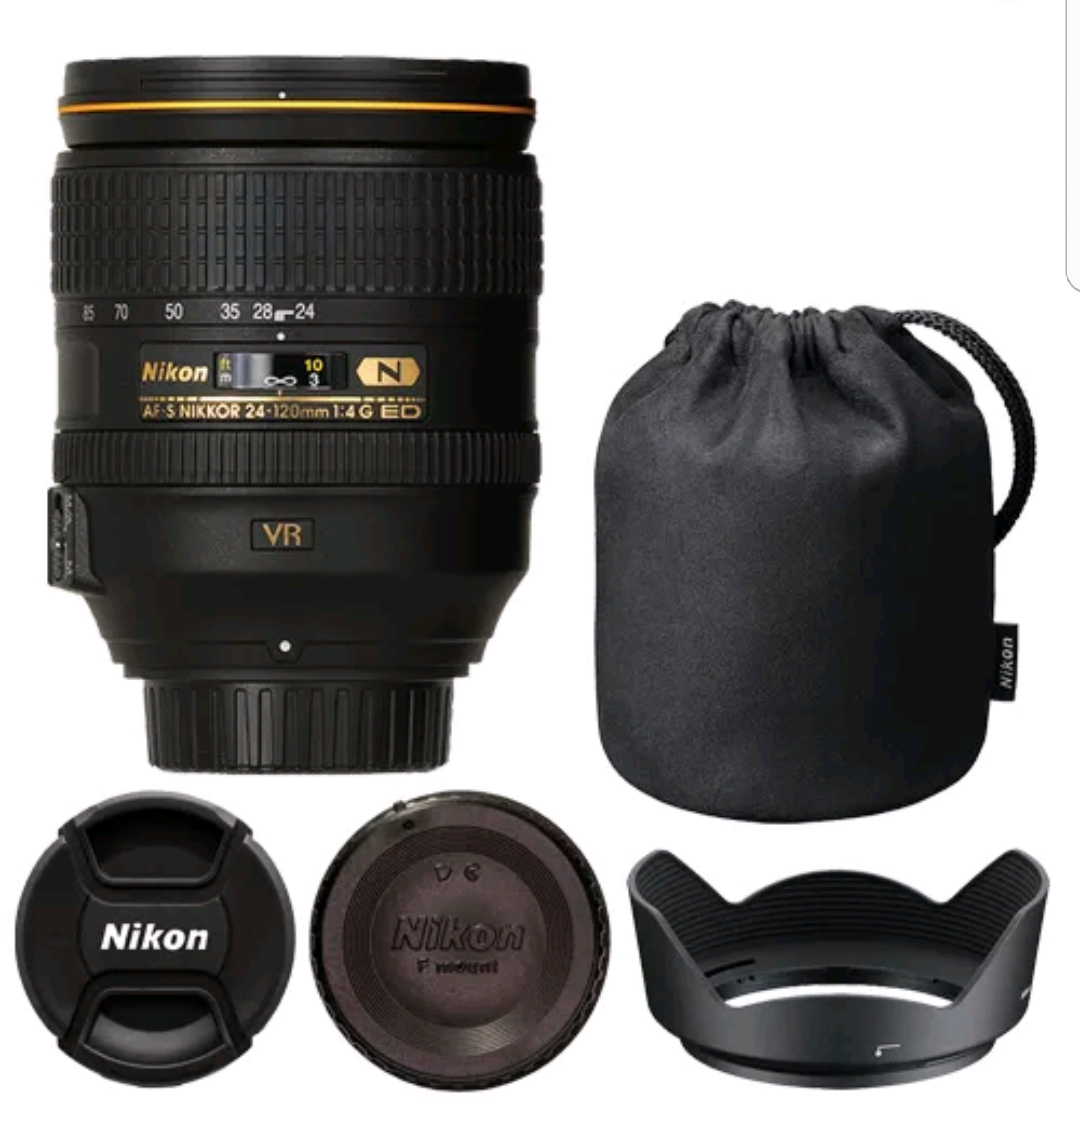 24 120mm f 4g ed vr. Nikon 24-120mm f/4g. Объектив Nikon 24-120mm f/4g ed VR af-s Nikkor. Nikon 24-120mm f/4.